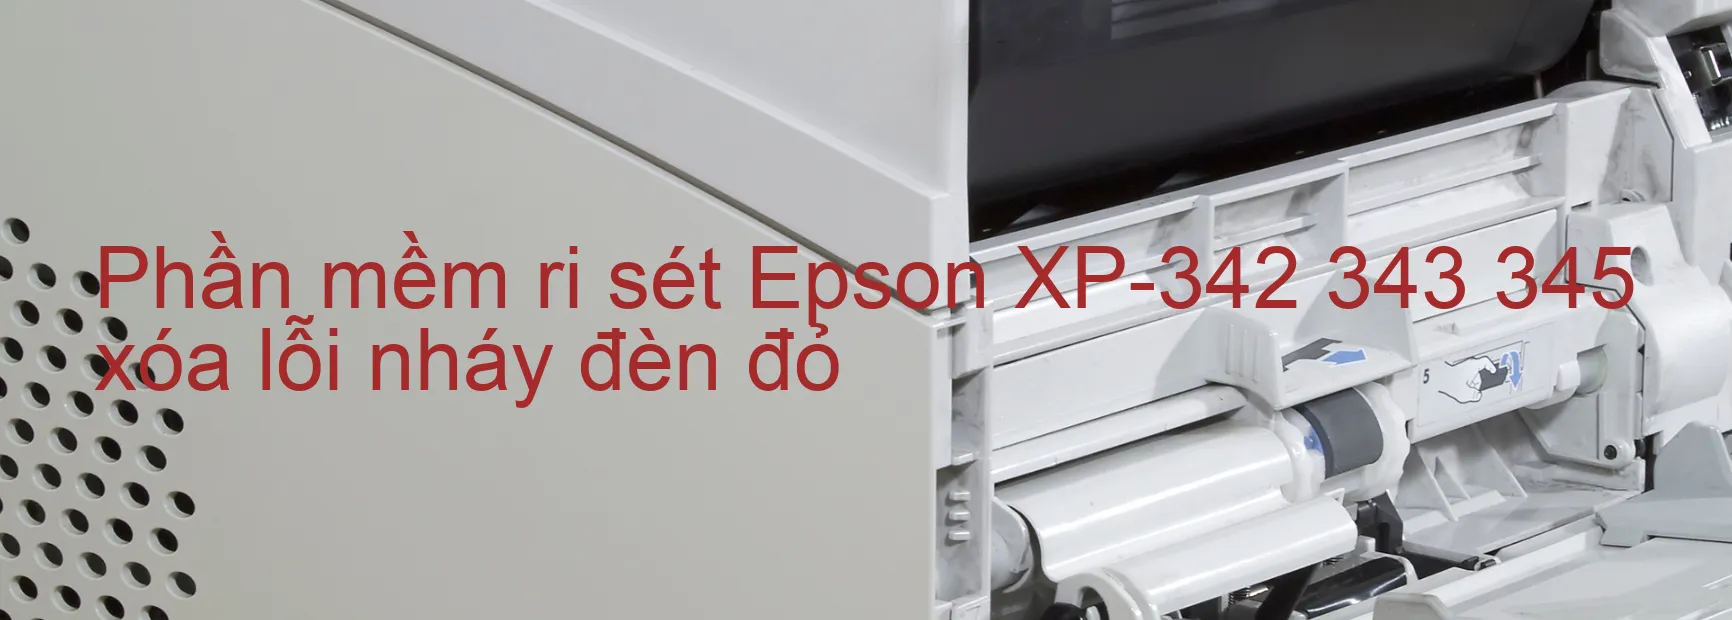 Phần mềm reset Epson XP-342 343 345 xóa lỗi nháy đèn đỏ